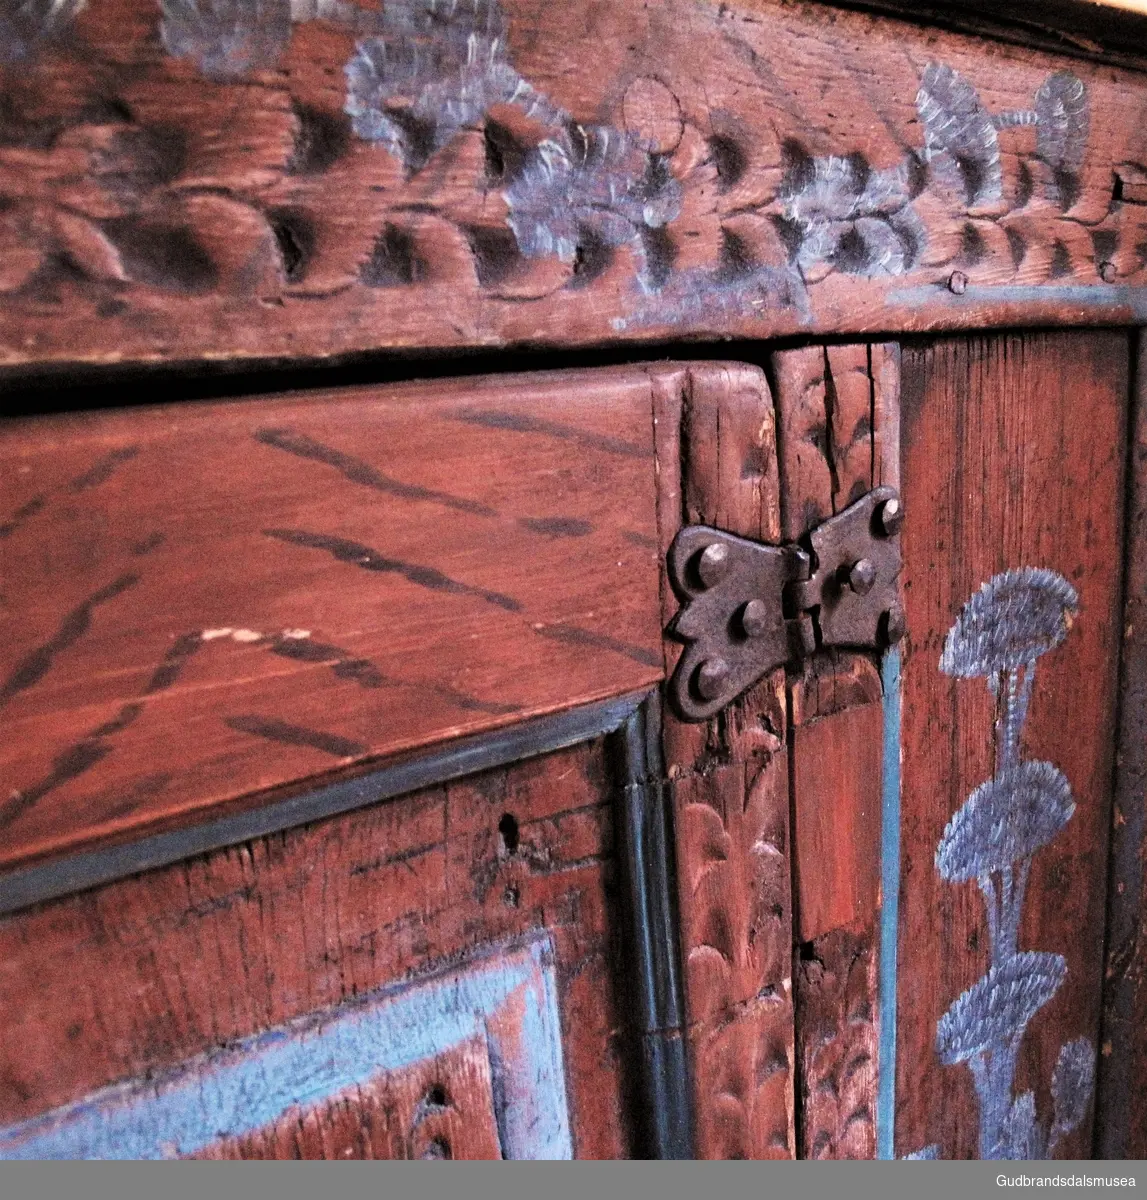 "Kannestol med sagtakket Krone, raudbrun Grunnfarge med svarte Schatteringar; i Speglarne høge blaa Blomar" (jvf. Katalog 1925).
Skapet har en overdel med hylle; en underdel med en dør med speil og to sidespeil samt en hylle i skaprommet. Døren har originale gangjern festet med store dekorative jernnagler. Liten jernring midt på døren til å åpne døren med. Til venstre for dørspeilet er det innsatt små, avskårne flatjernstykker med ukjent funksjon.
Dekor. Rødbrun grunnfarge med dekorasjonsådring på skap-, dør- speilrammer og koll. Enkel rosemaling i blått med blomstermotiv på alle speil og koll. Koll med profilerte lister samt skolpesnittborder i renessansestil på skap-, dør- og speilrammer. Skapet er antakelig malt opp på slutten av 1700-tallet, slik det kan være eldre enn det påskrevne årstallet.